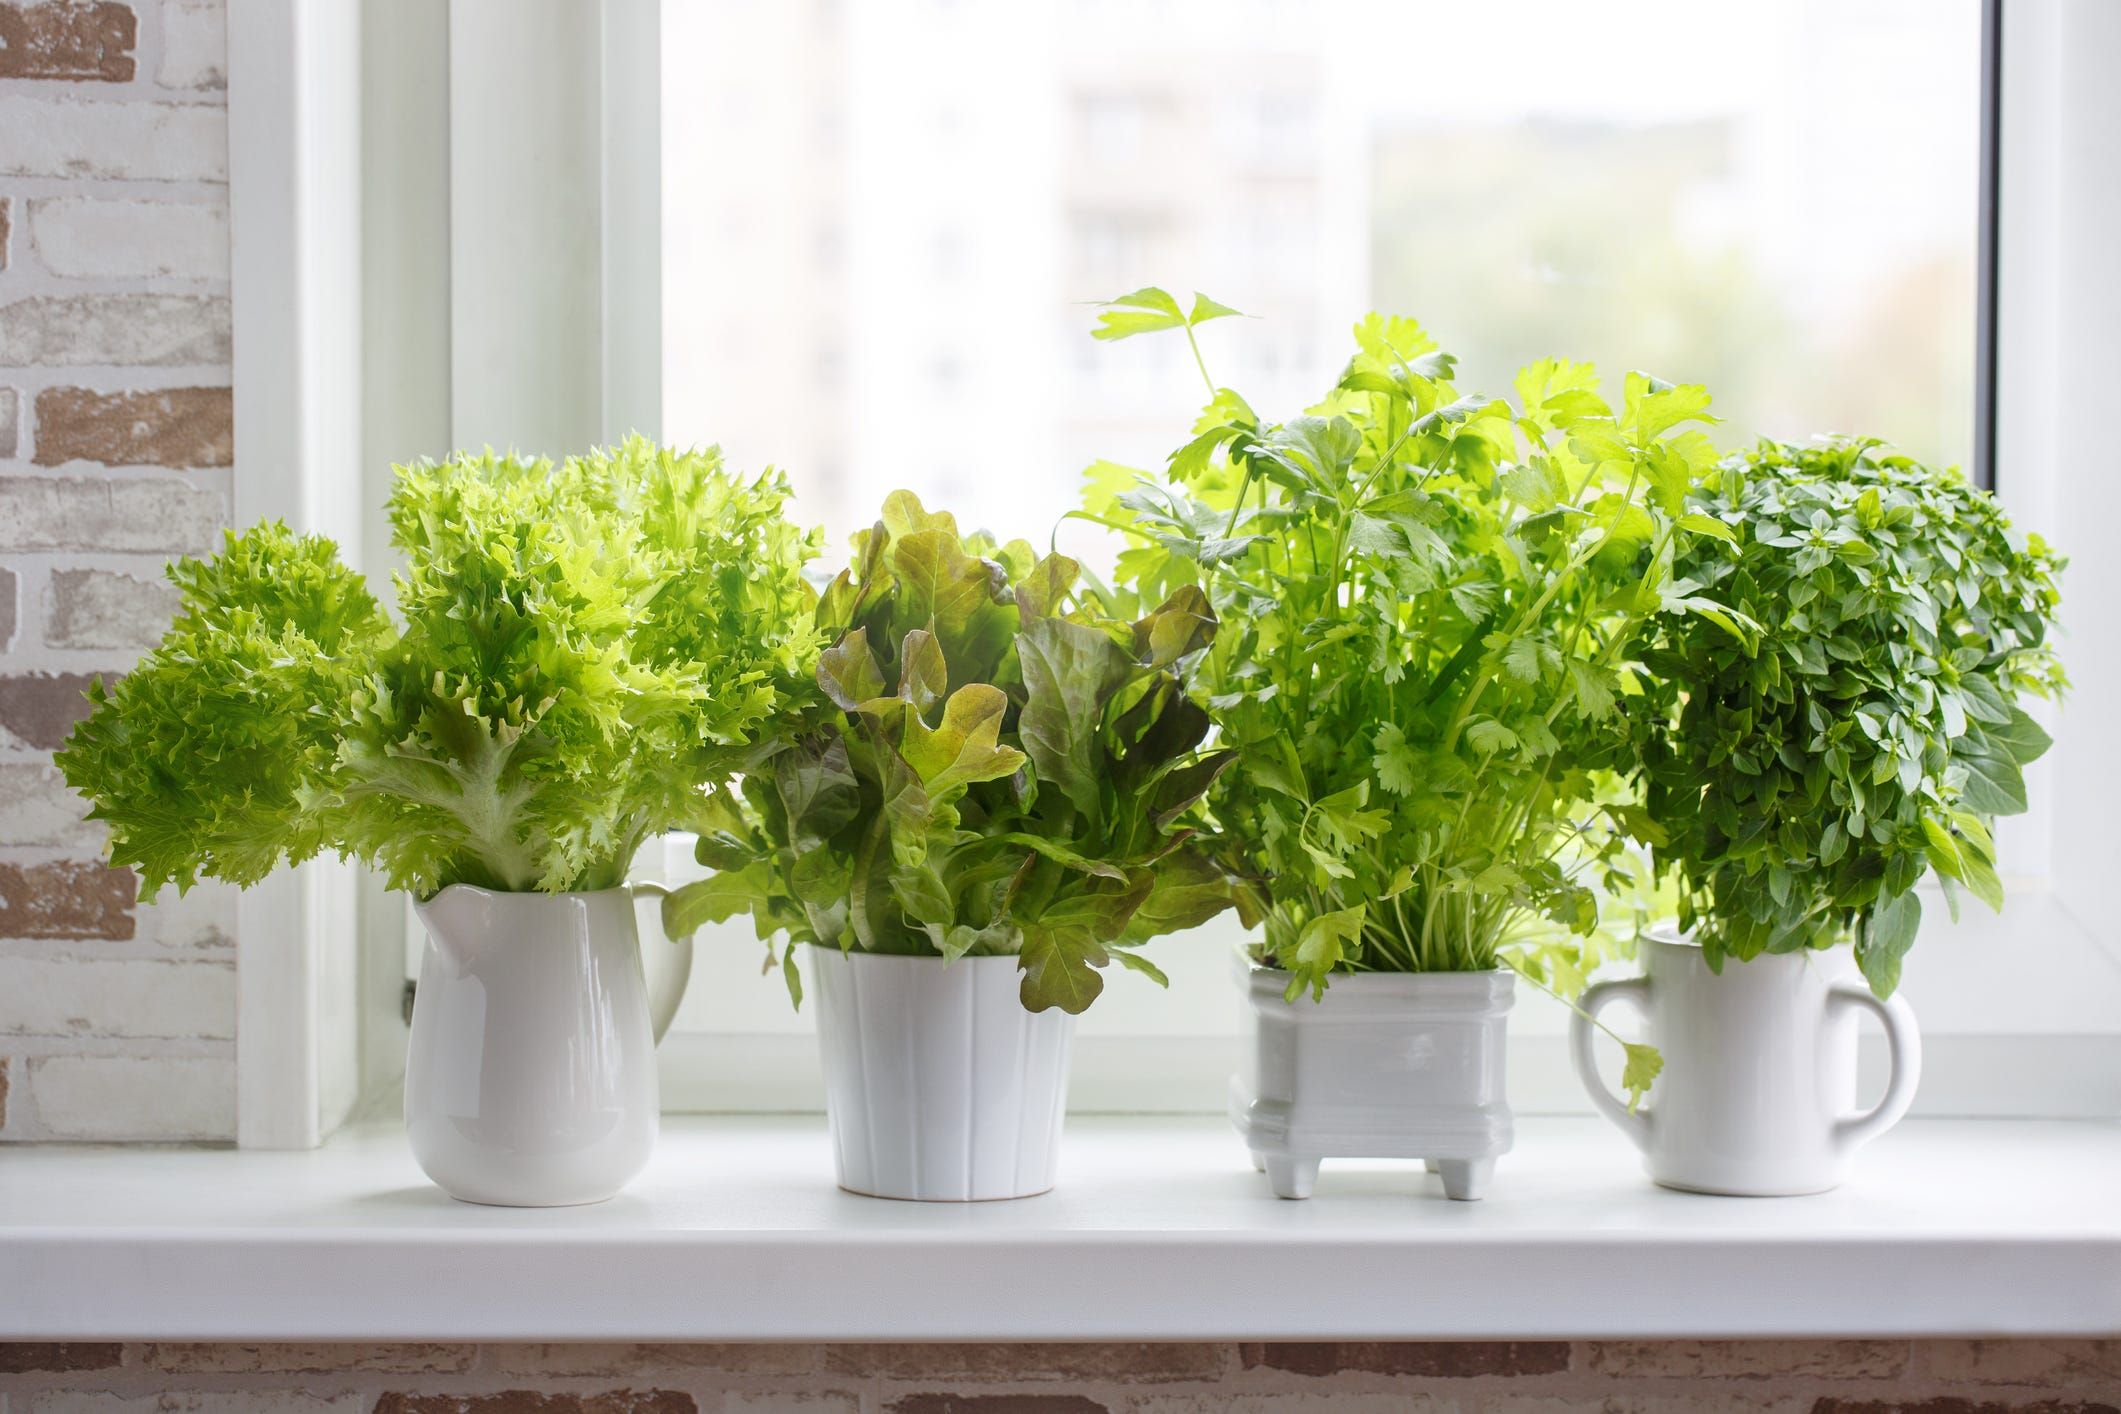 17 Indoor Herb Garden Ideas 2022 Kitchen Herb Planters We Love